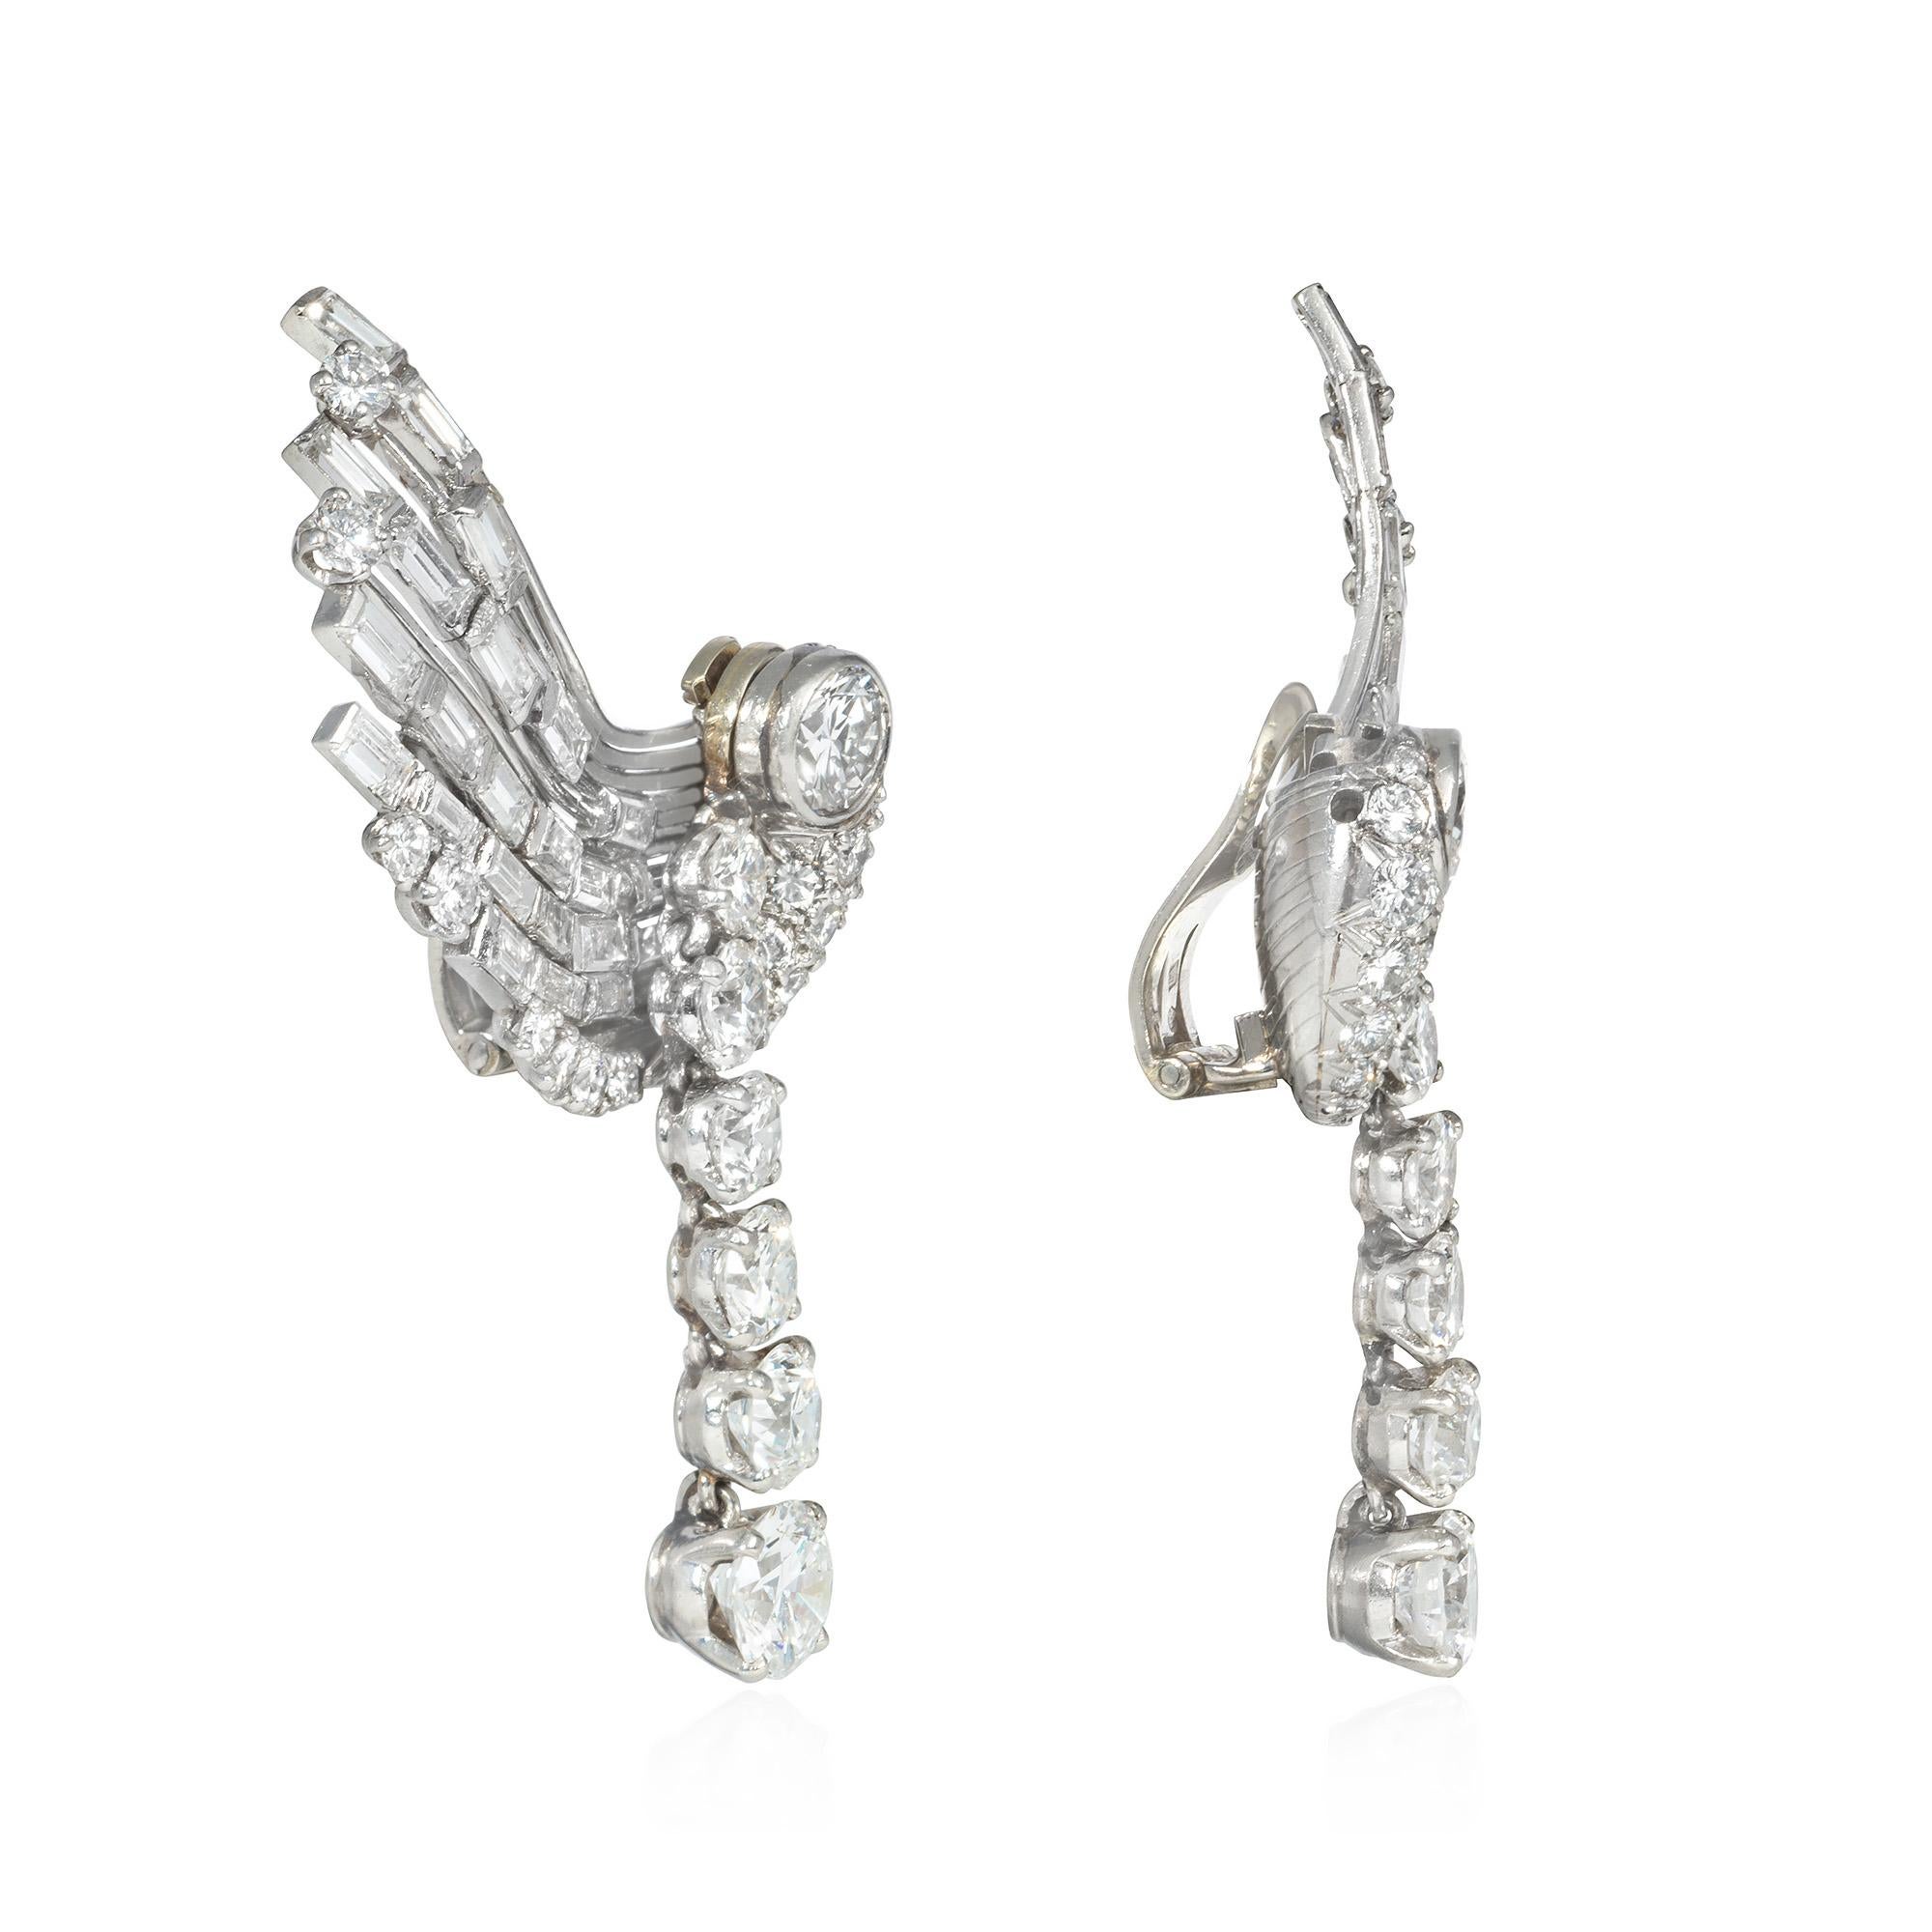 Ein Paar Retro-Diamant-Clip-Ohrringe in Form von stilisierten Flügeln, jeweils mit einem abnehmbaren Anhänger aus spitz zulaufenden Diamanten, aus Platin und 18 Karat Weißgold. Französischer Import.  Atw 7.50 ct.  Es können Anhänger aus